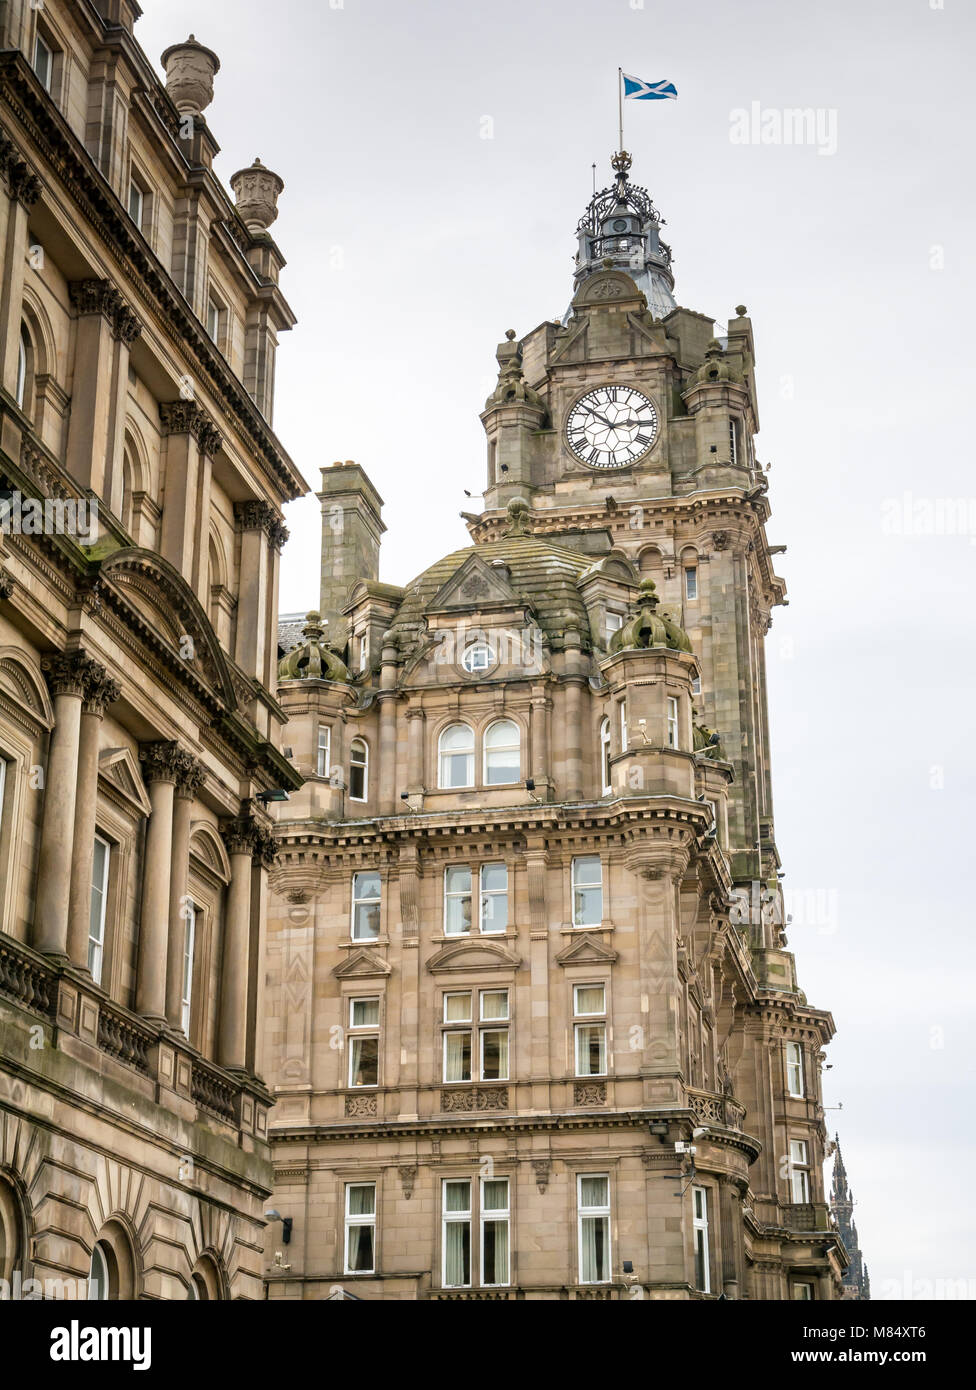 À la recherche jusqu'à l'époque victorienne ornée Balmoral Hotel tour de l'horloge, Princes Street, Edinburgh, Ecosse, Royaume-Uni, avec sautoir flag flying Banque D'Images